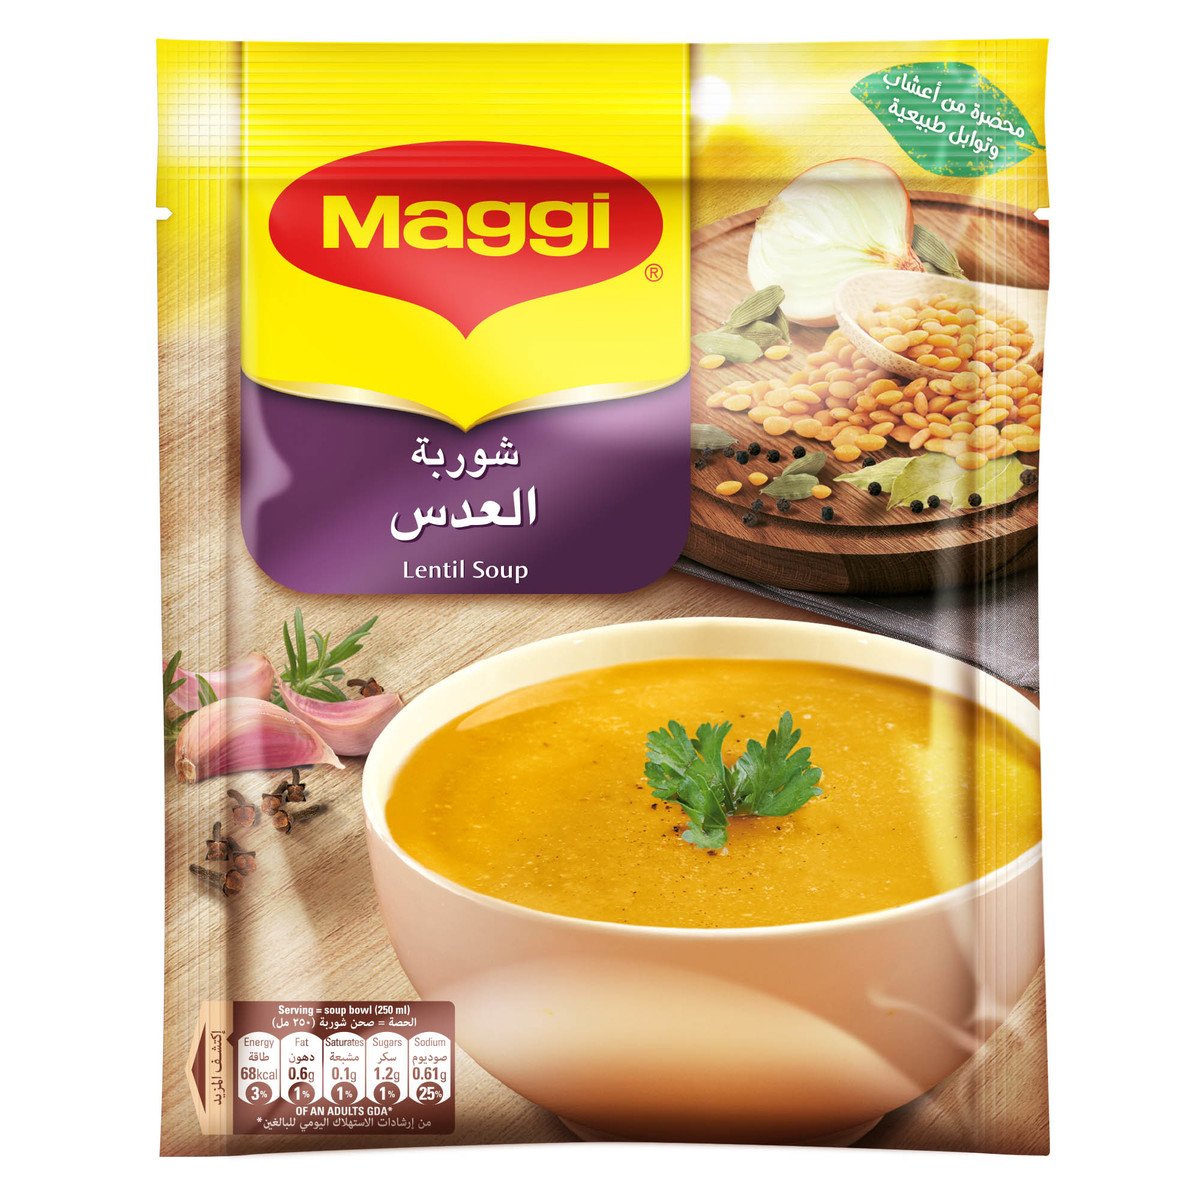 Maggi Lentil Soup Sachet 84g